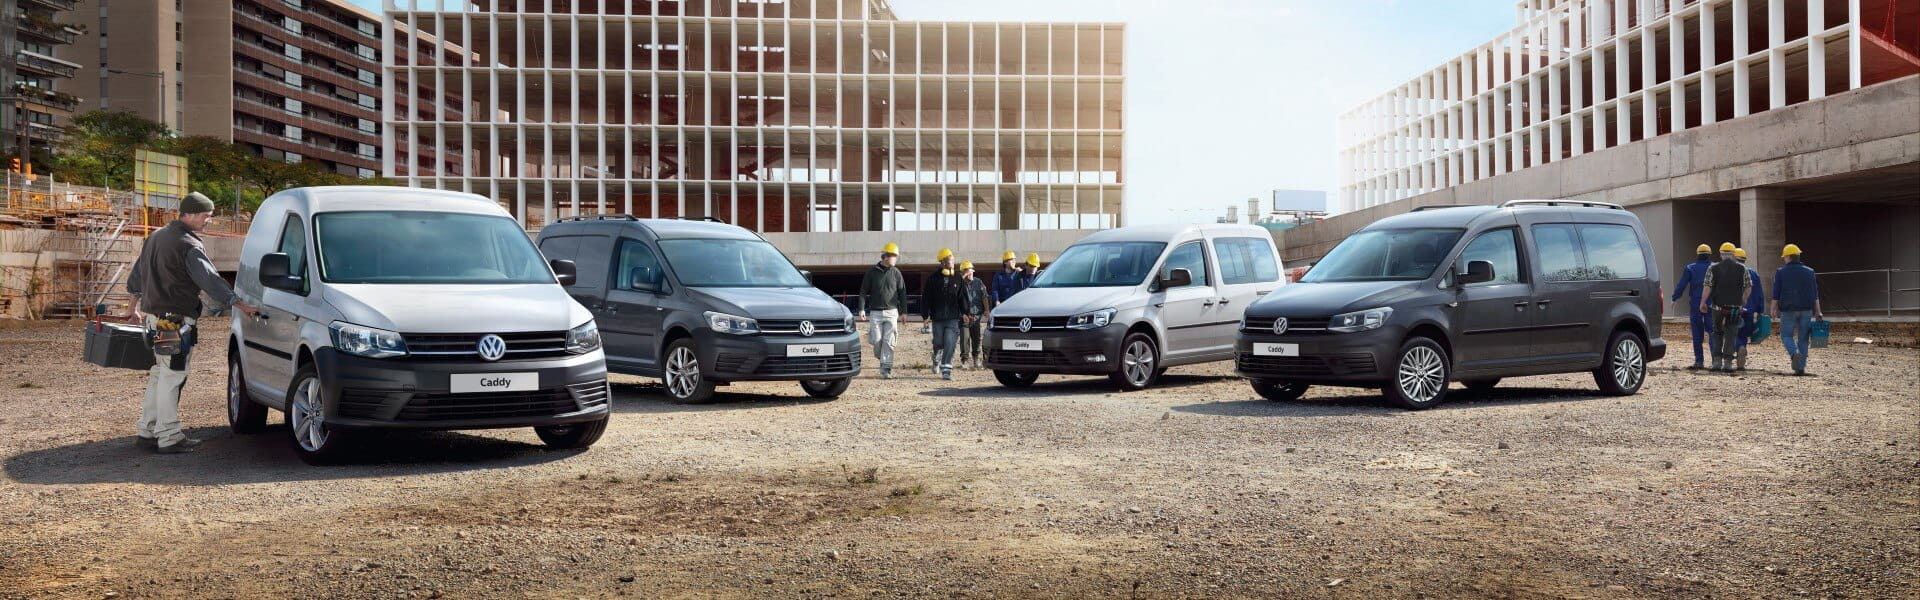 Opertational lease Volkswagen Bedrijfswagen bij Dutchlease